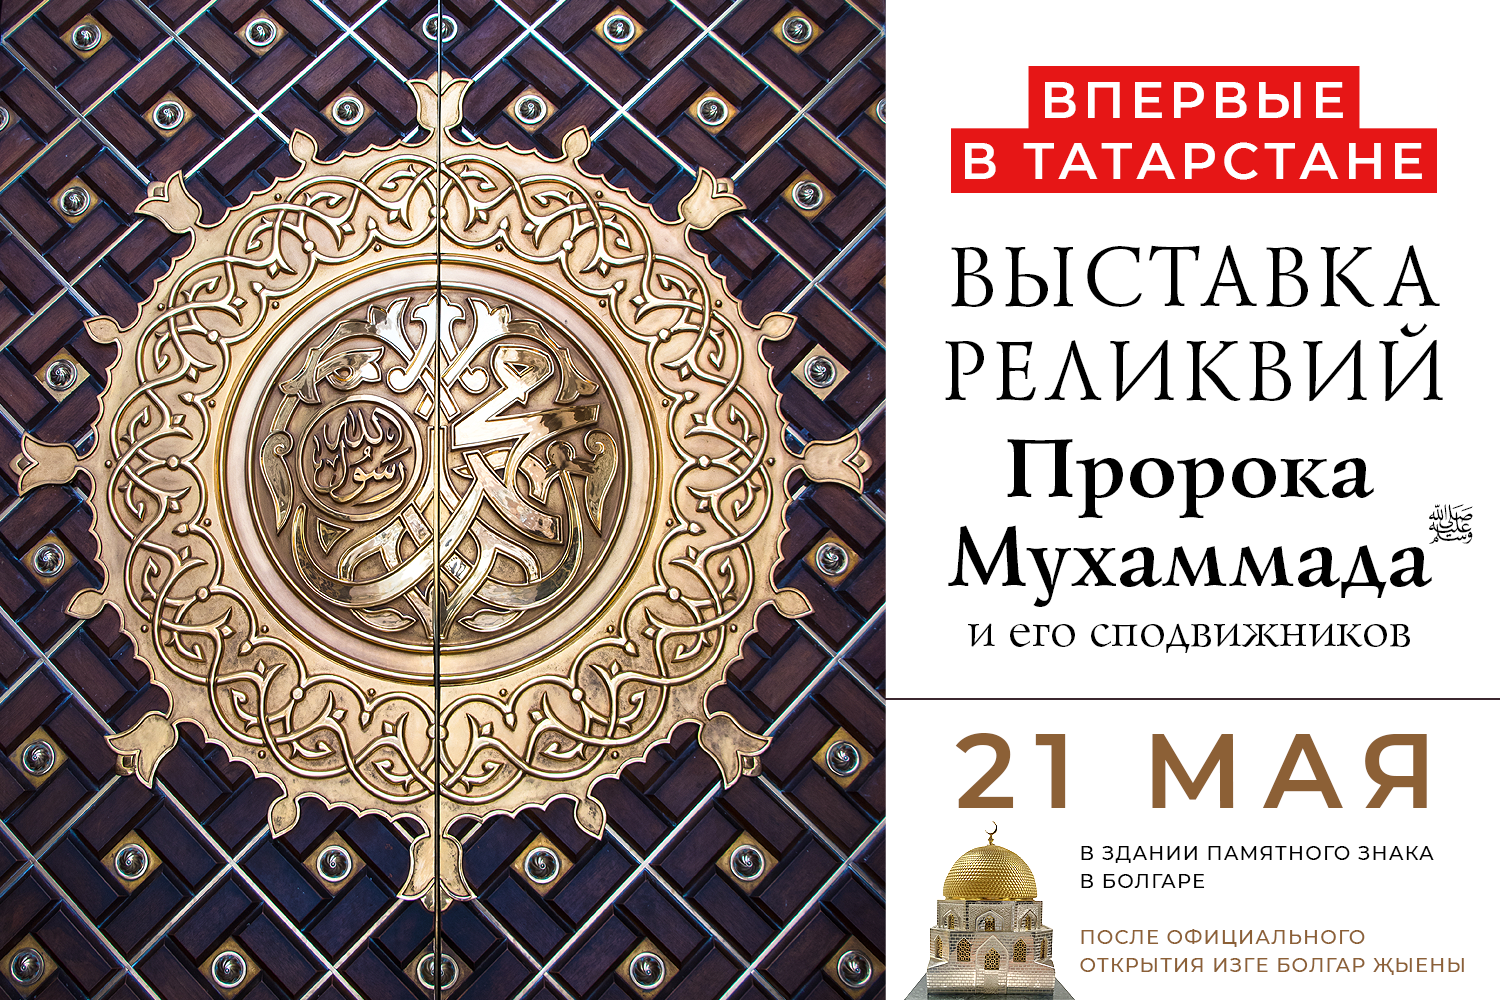 Священные реликвии пророка Мухаммада ﷺ и его сподвижников впервые привезут в Татарстан из Дагестана